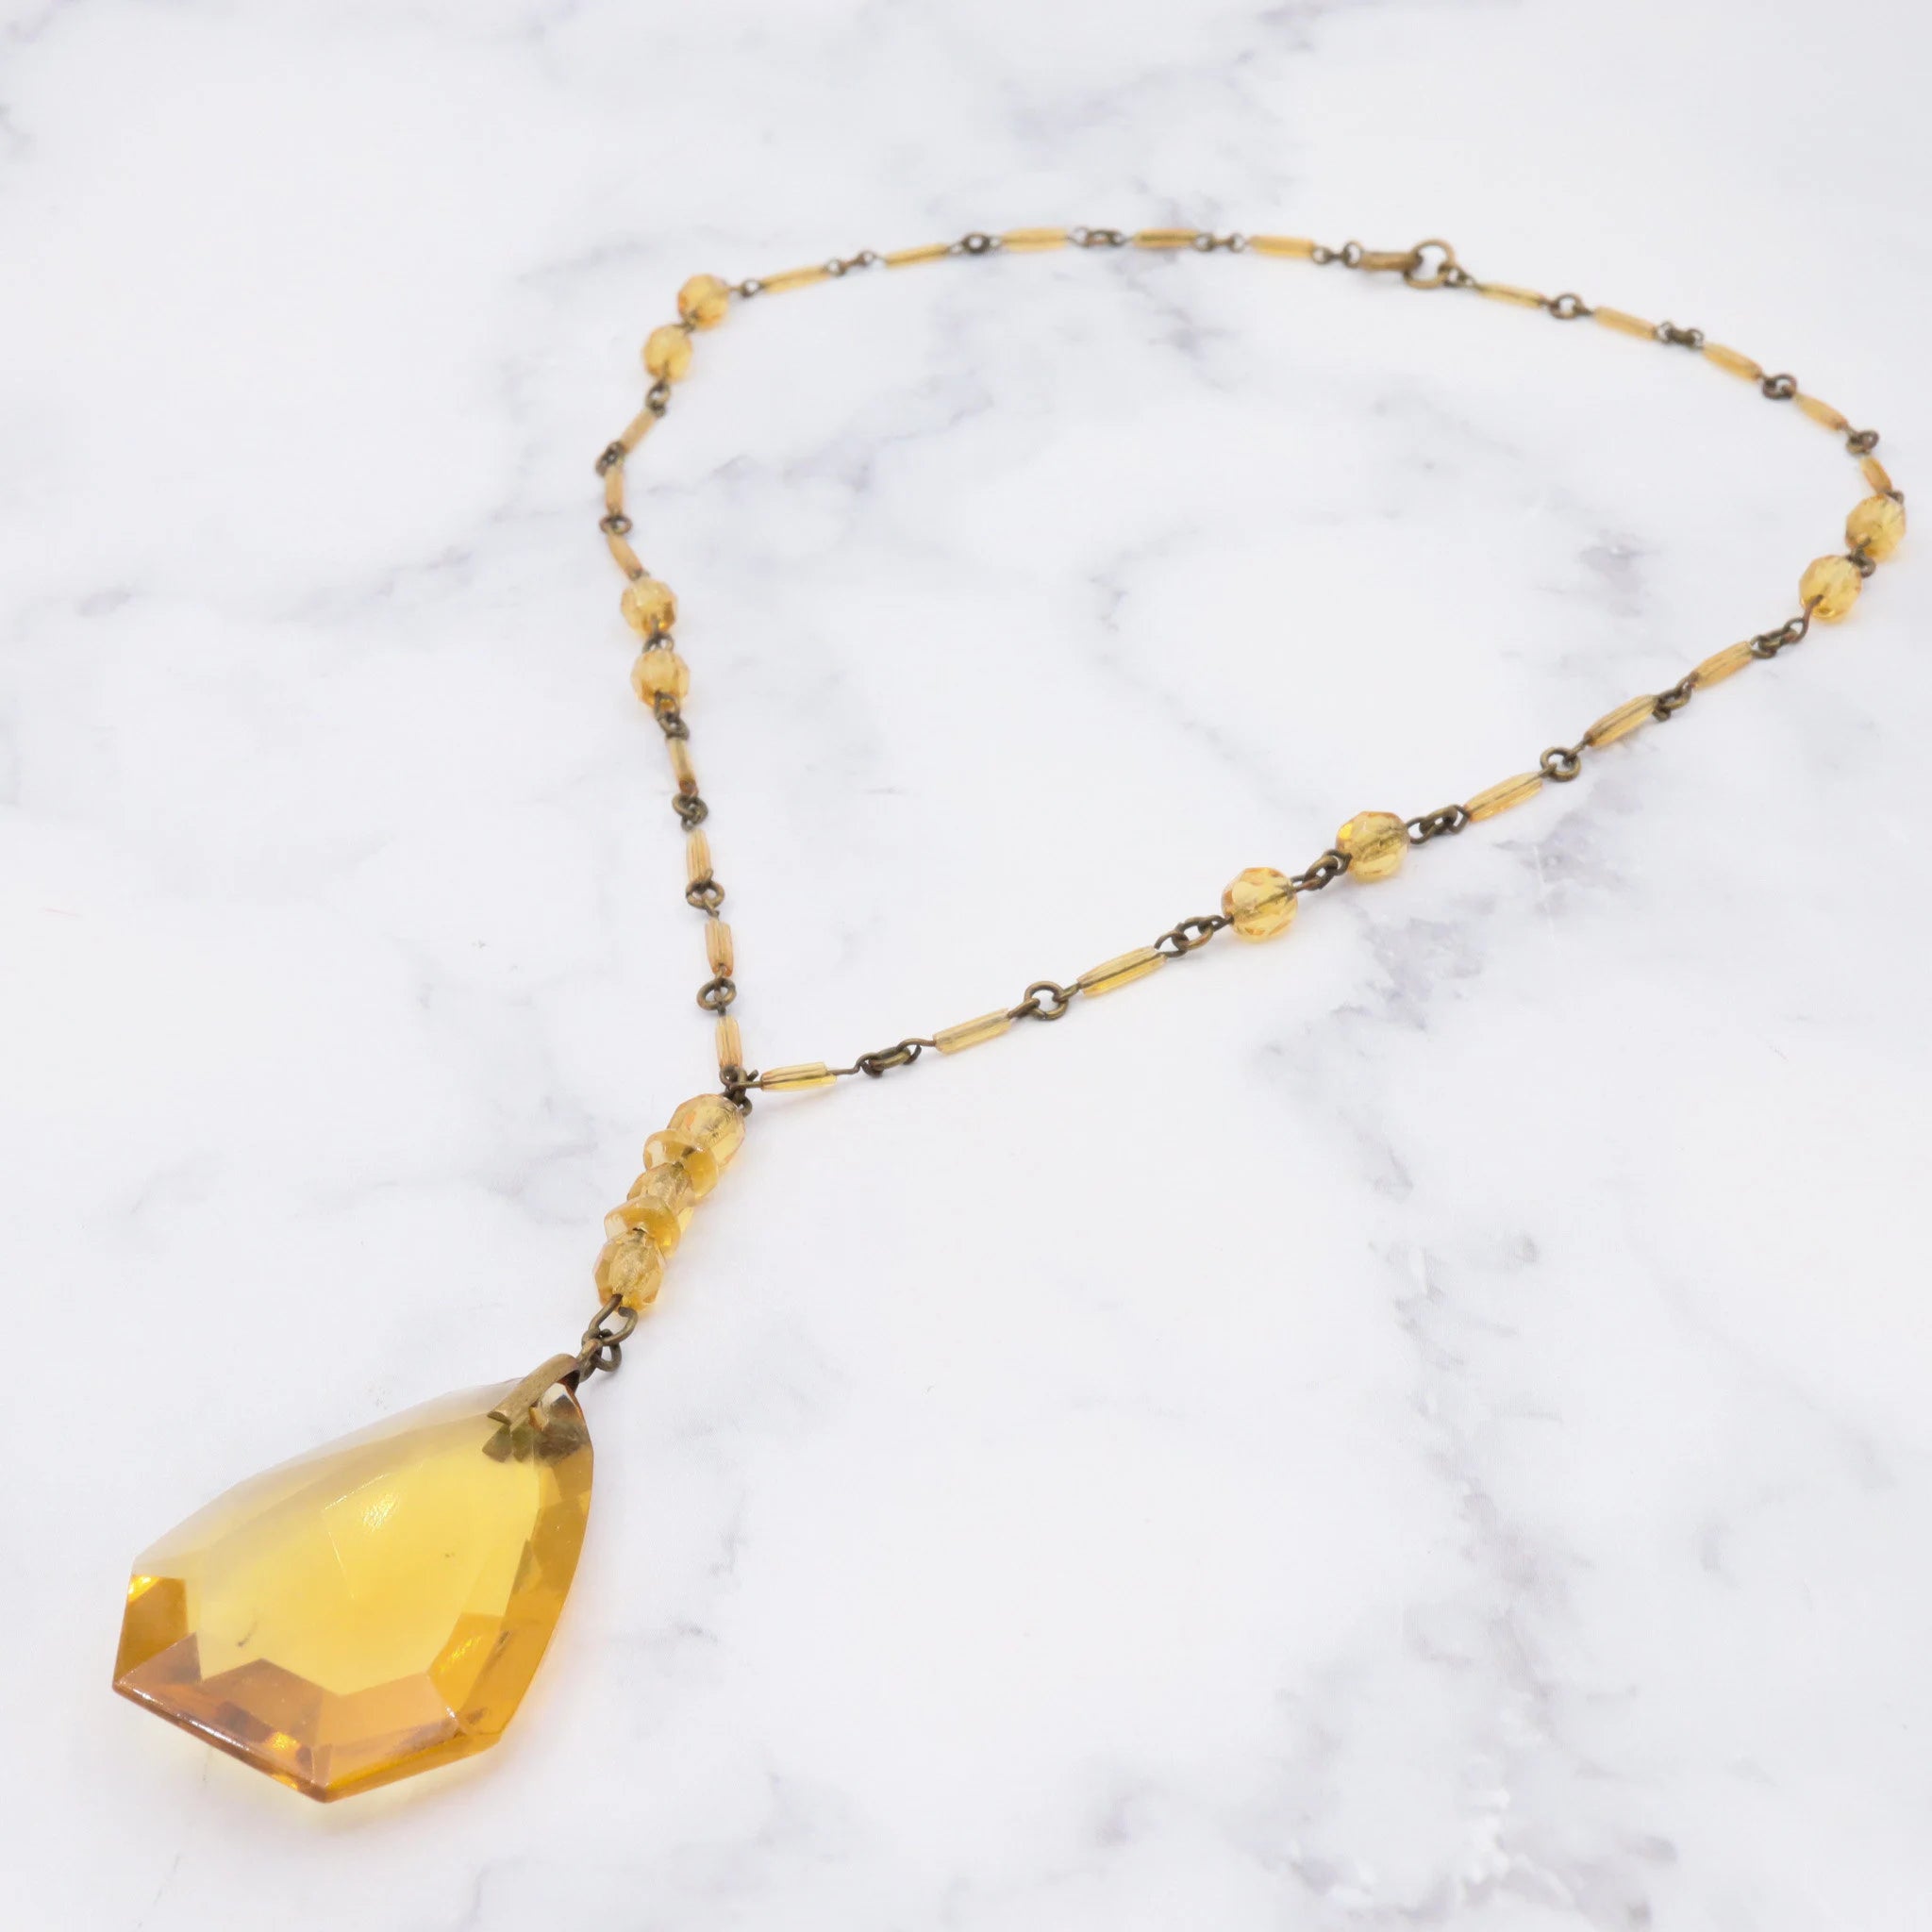 Antique deco Czech glass & brass drop pendant necklace